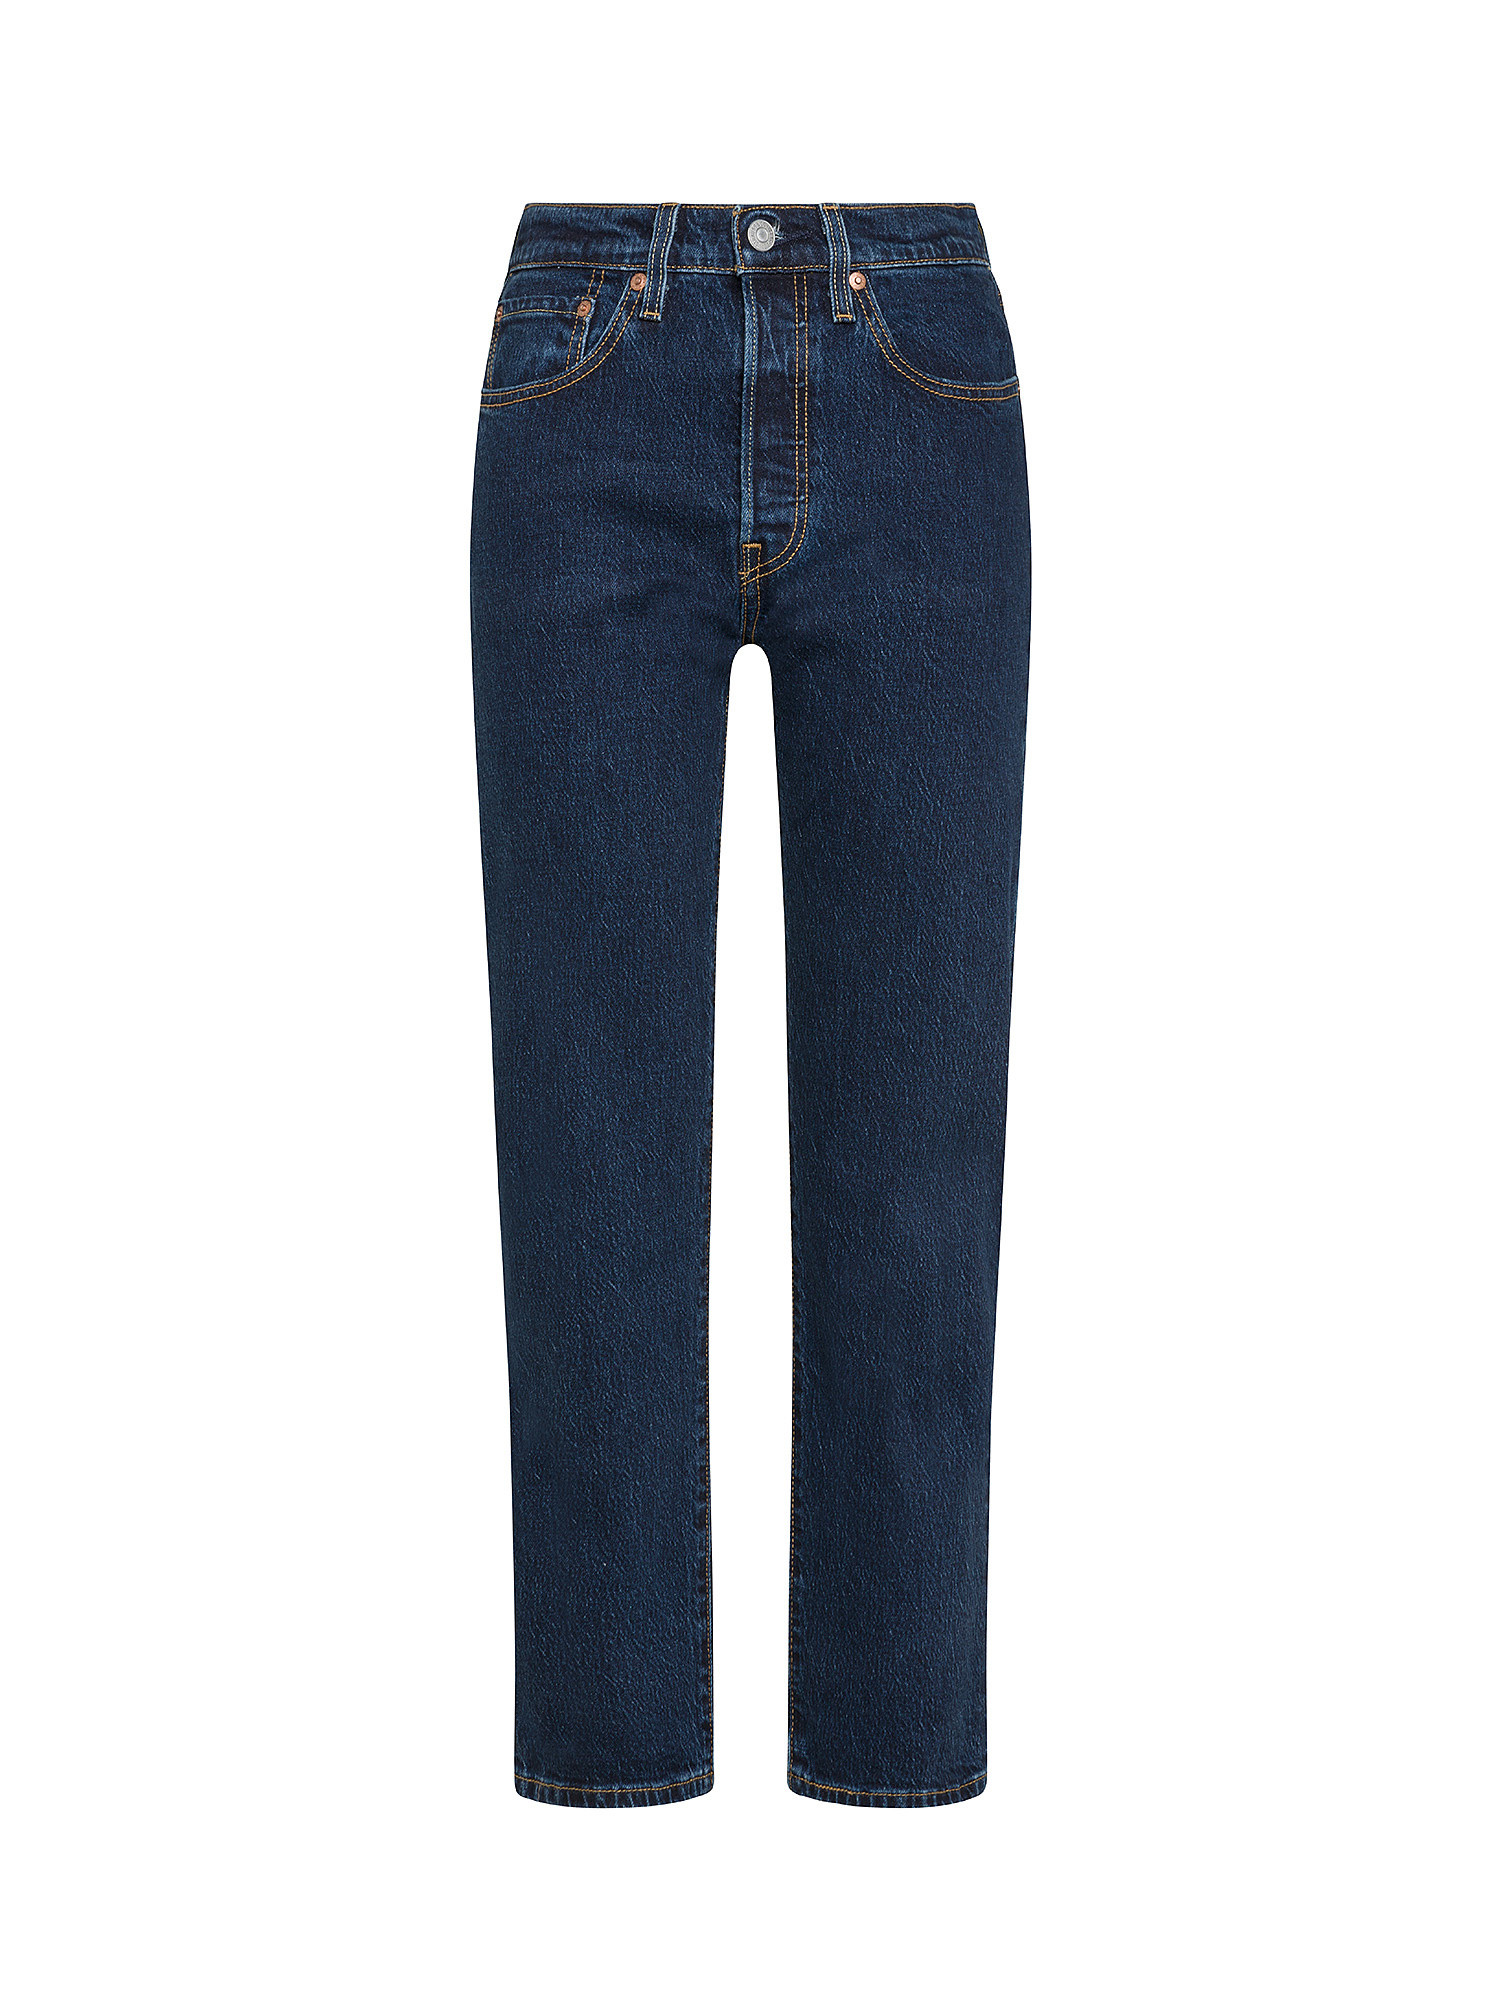 Levi's - jeans 501® original cropped, Denim, large image number 0